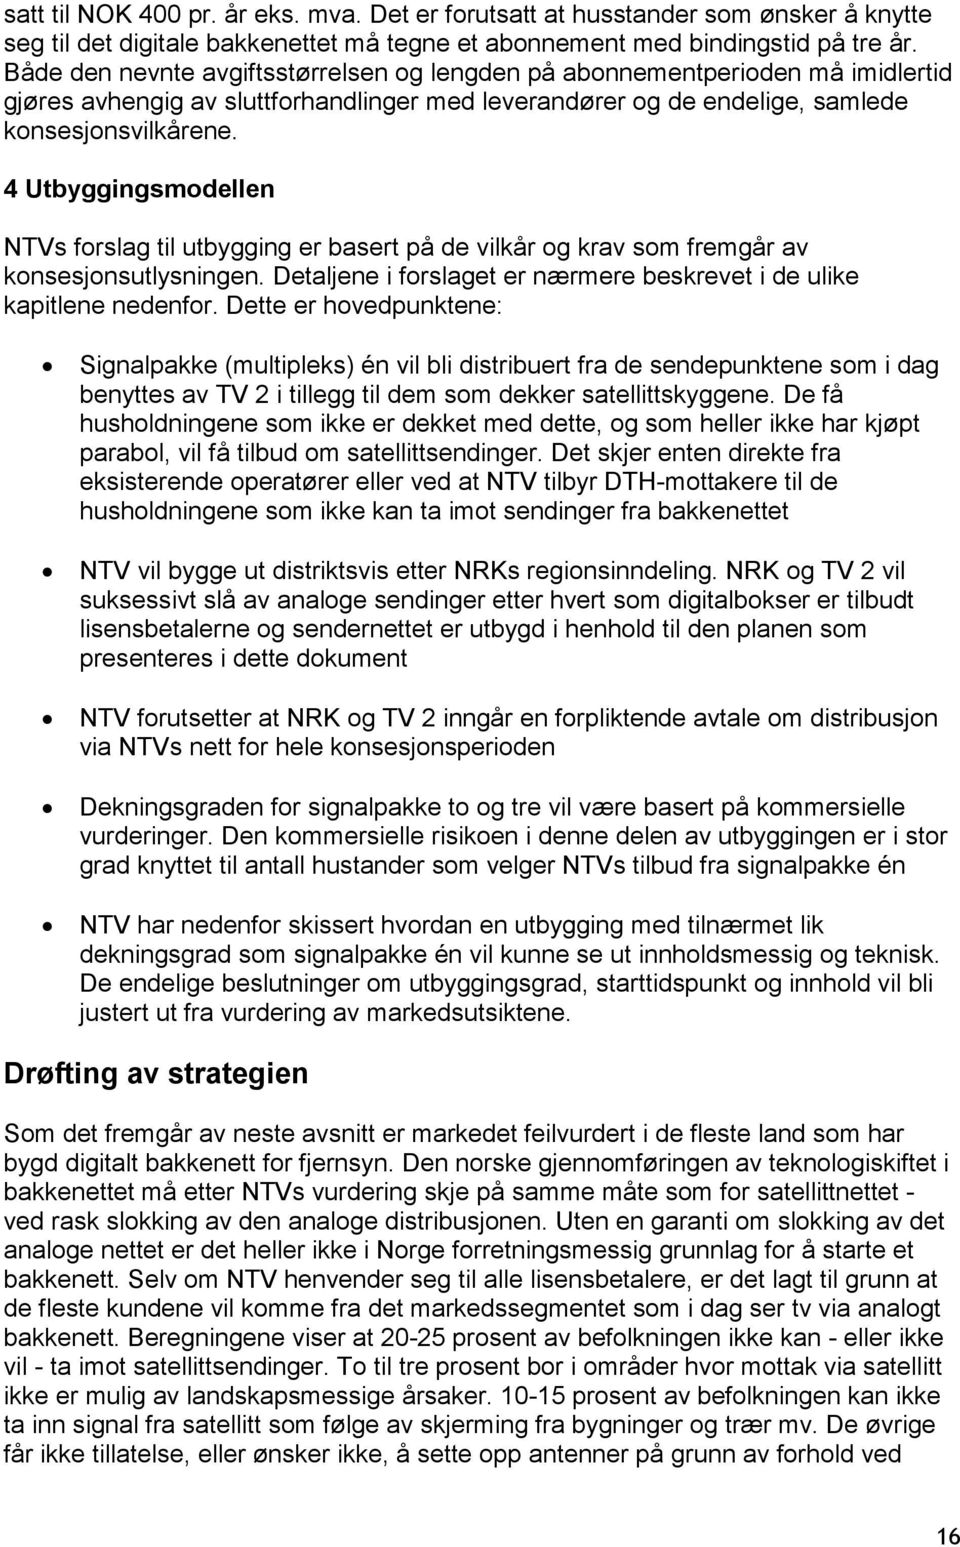 4 Utbyggingsmodellen NTVs forslag til utbygging er basert på de vilkår og krav som fremgår av konsesjonsutlysningen. Detaljene i forslaget er nærmere beskrevet i de ulike kapitlene nedenfor.